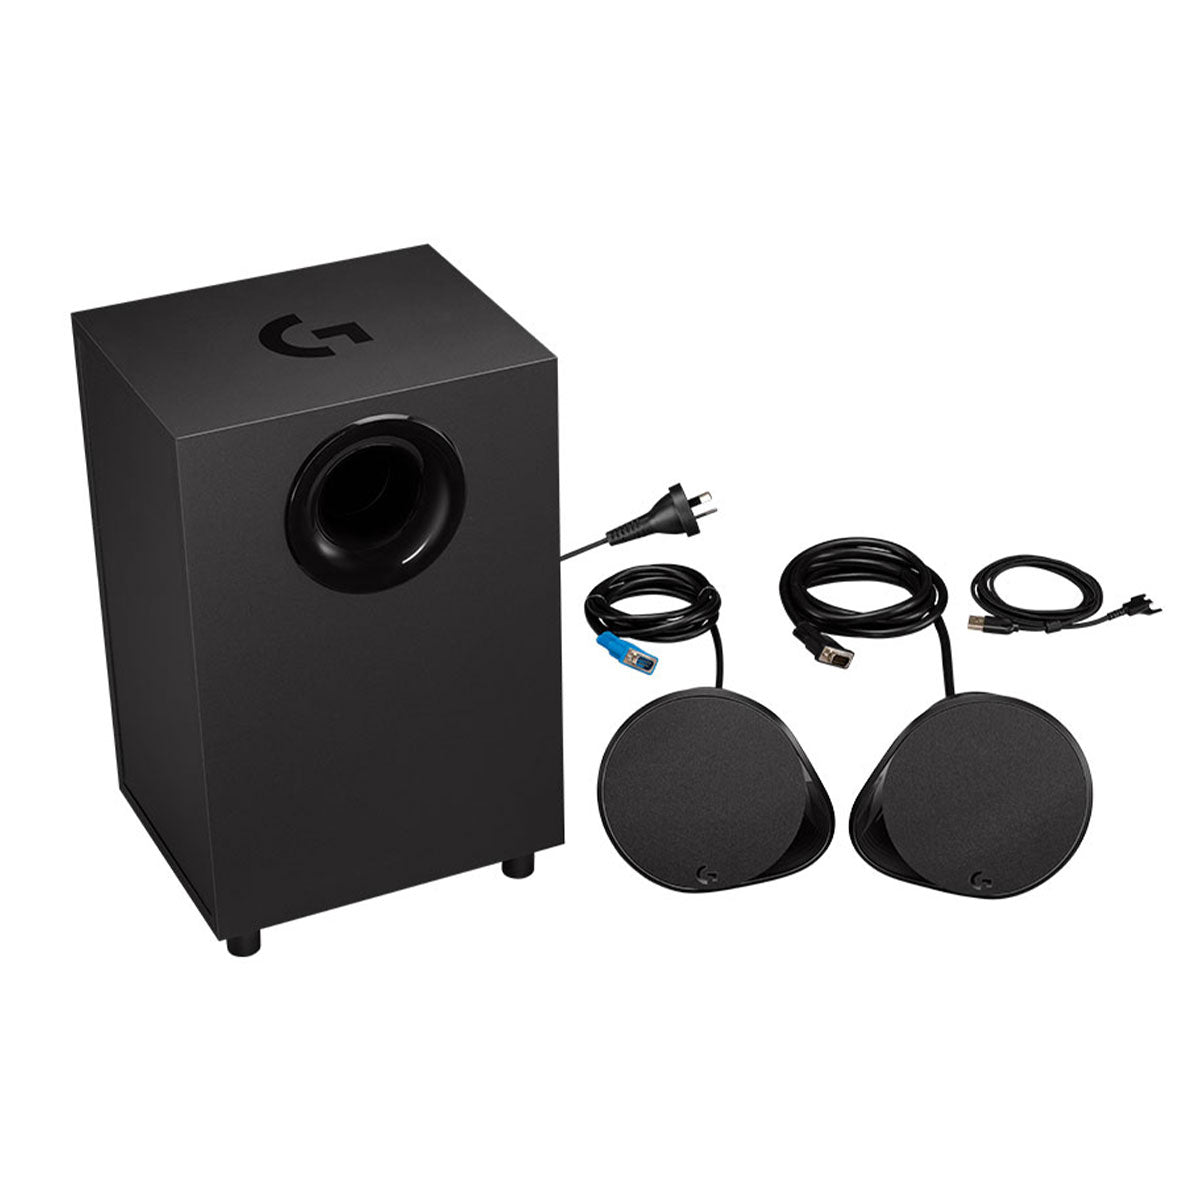 Logitech G560 - speaker system - for PC - wireless on